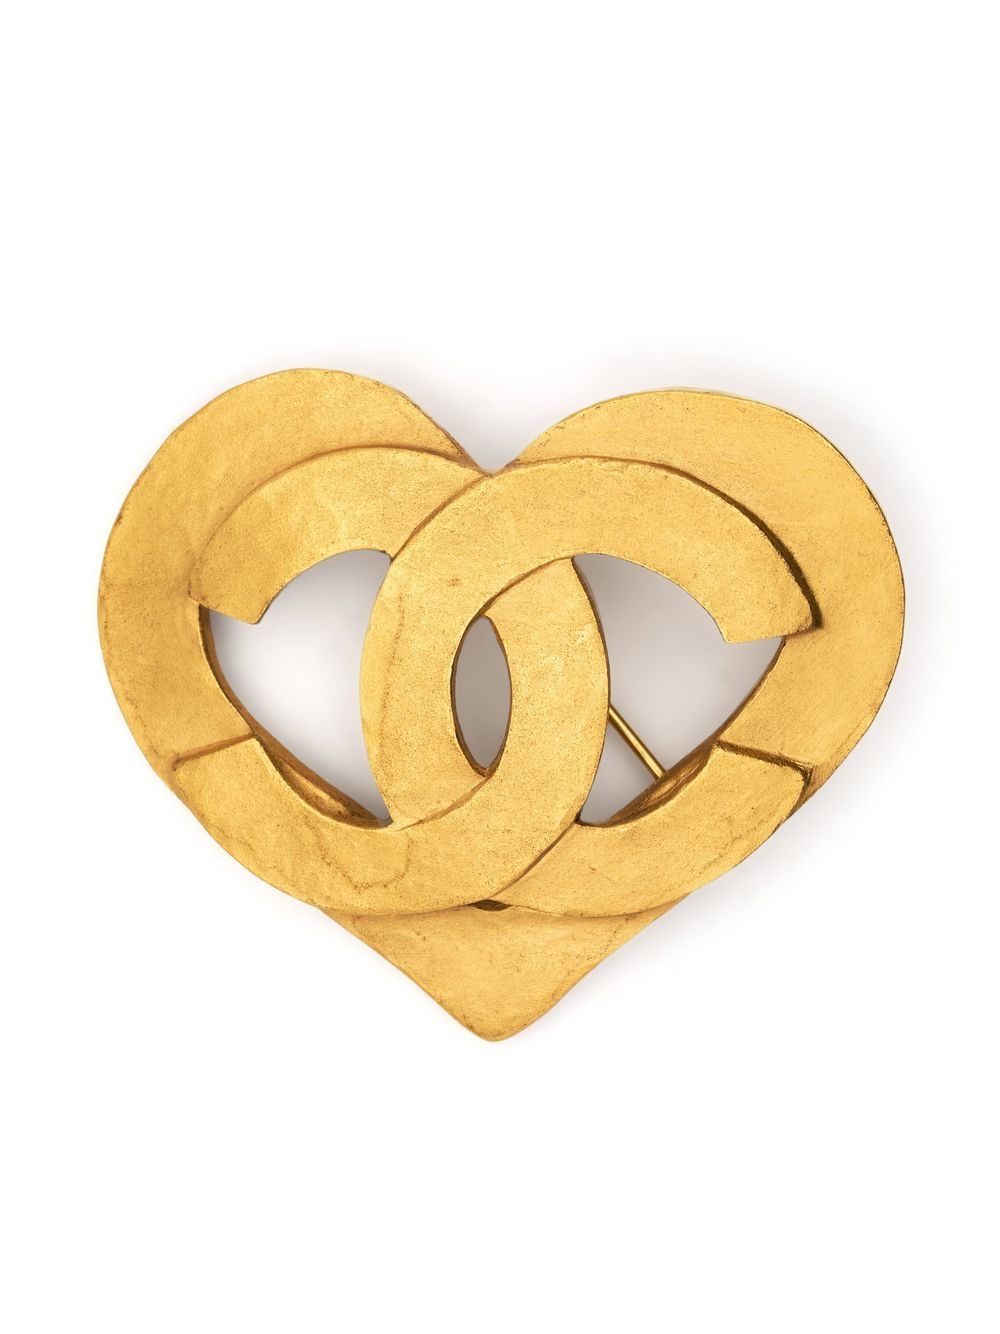 Coco Chanel Byzantine Heart Crest Brooch  Heart shaped jewelry, Chanel  jewelry, Brooch